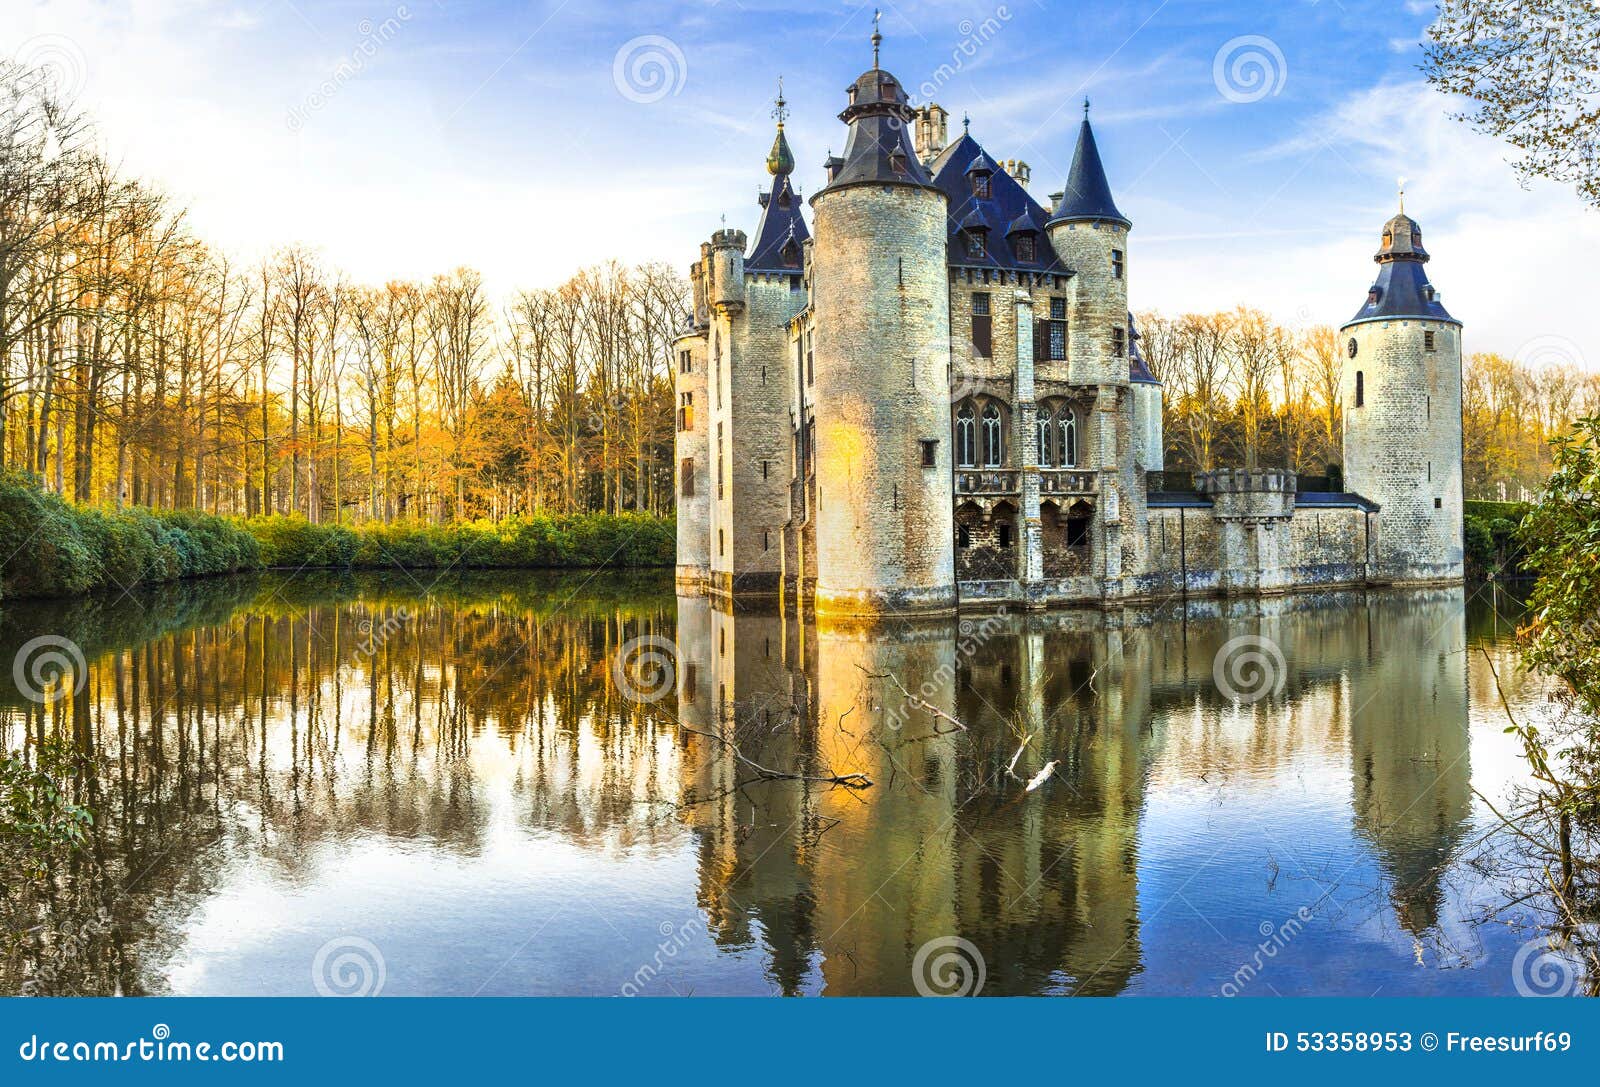 castles of belgium, antwerpen region